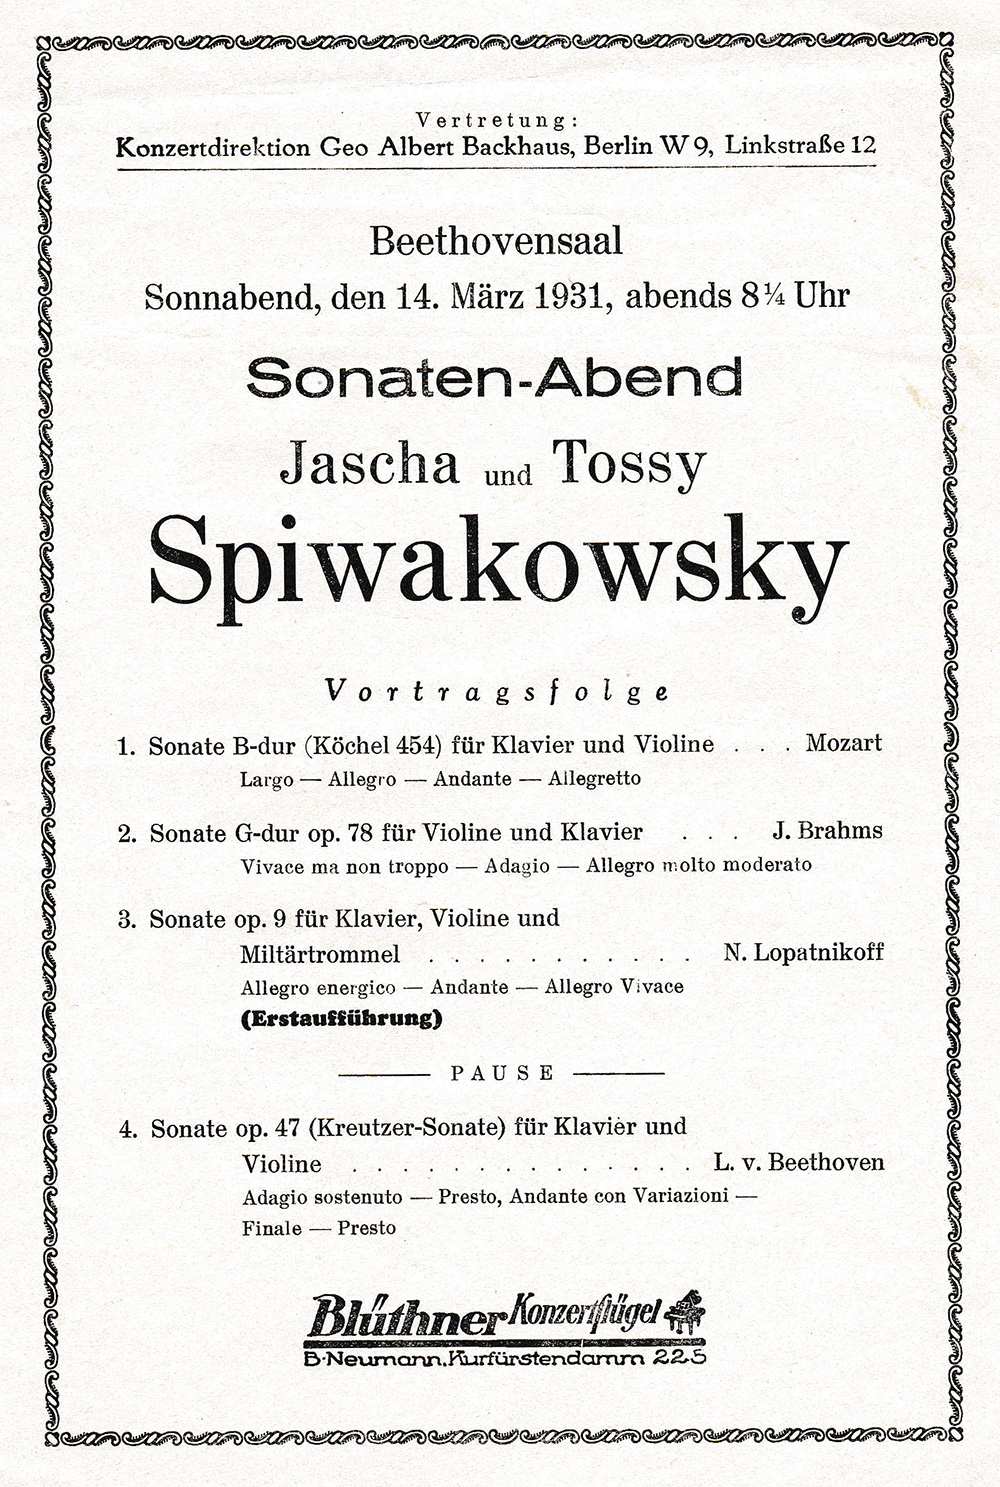 Jascha Spivakovsky